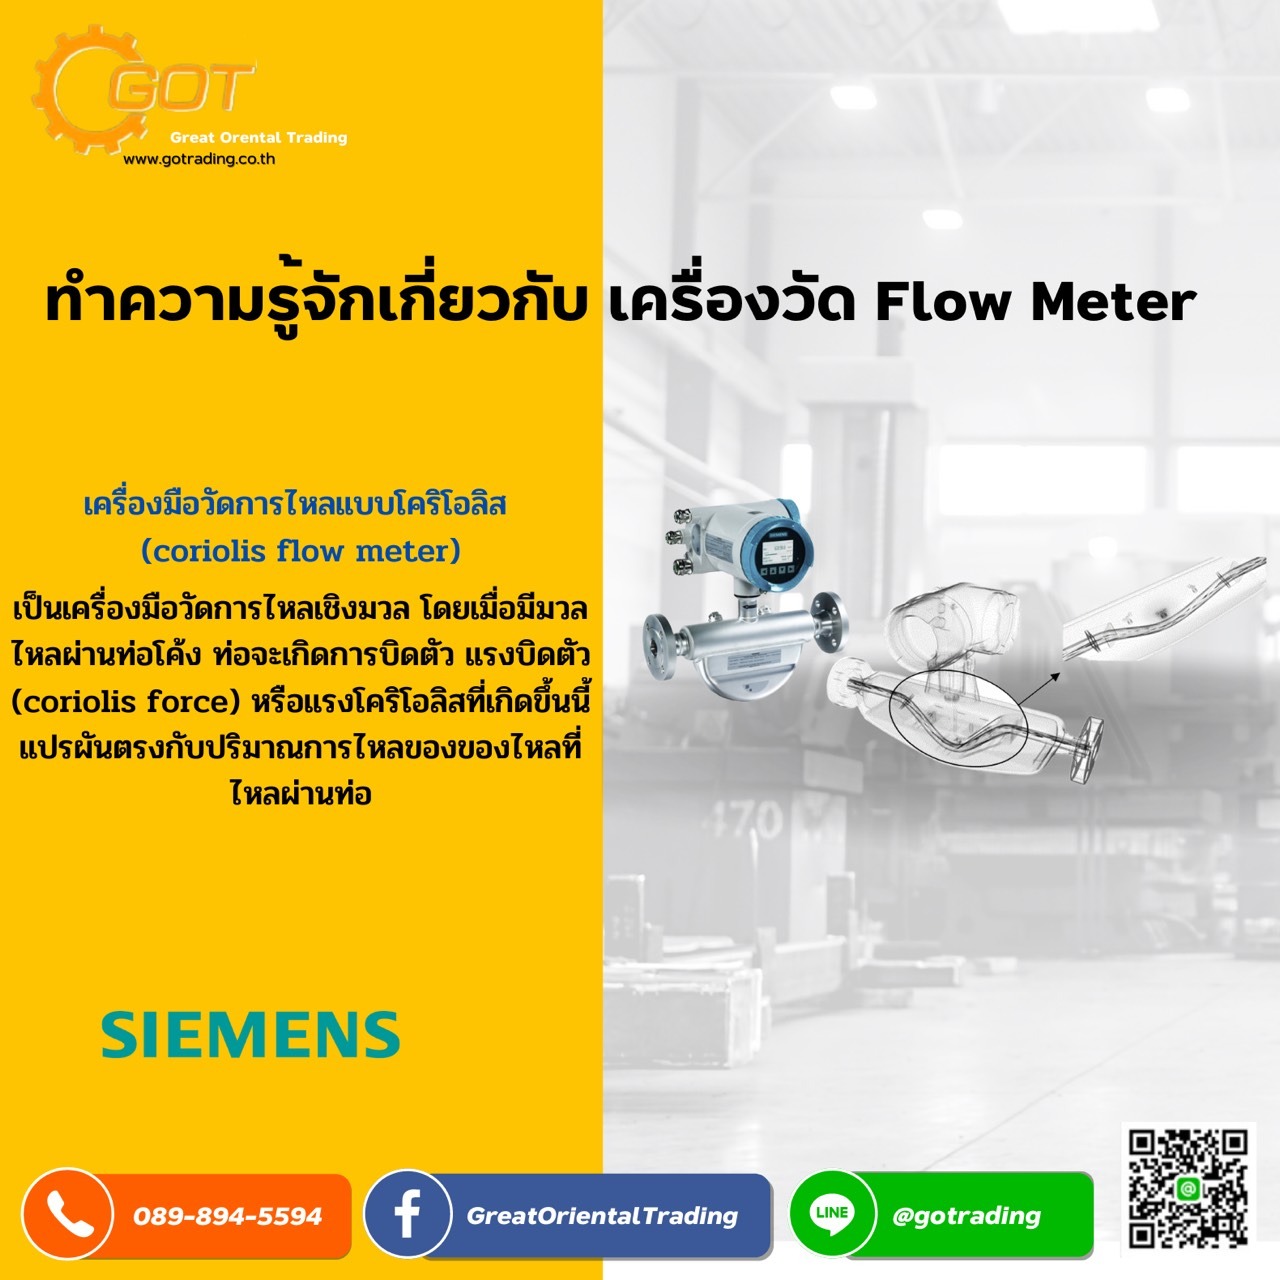 เครื่องมือวัด Flow Meter” หนึ่งในเครื่องมือที่มีส่วนช่วยในงานอุตสาหกรรมด้านการวัดอัตราการไหลสำหรับงานอุตสาหกรรม  เครื่องมือวัดชนิดหนึ่งที่ถูกออกแบบมาเพื่อวัดปริมาตร ปริมาณ หรือ อัตราการเคลื่อนที่ของไหล (Fluid) ผ่านภาชนะ